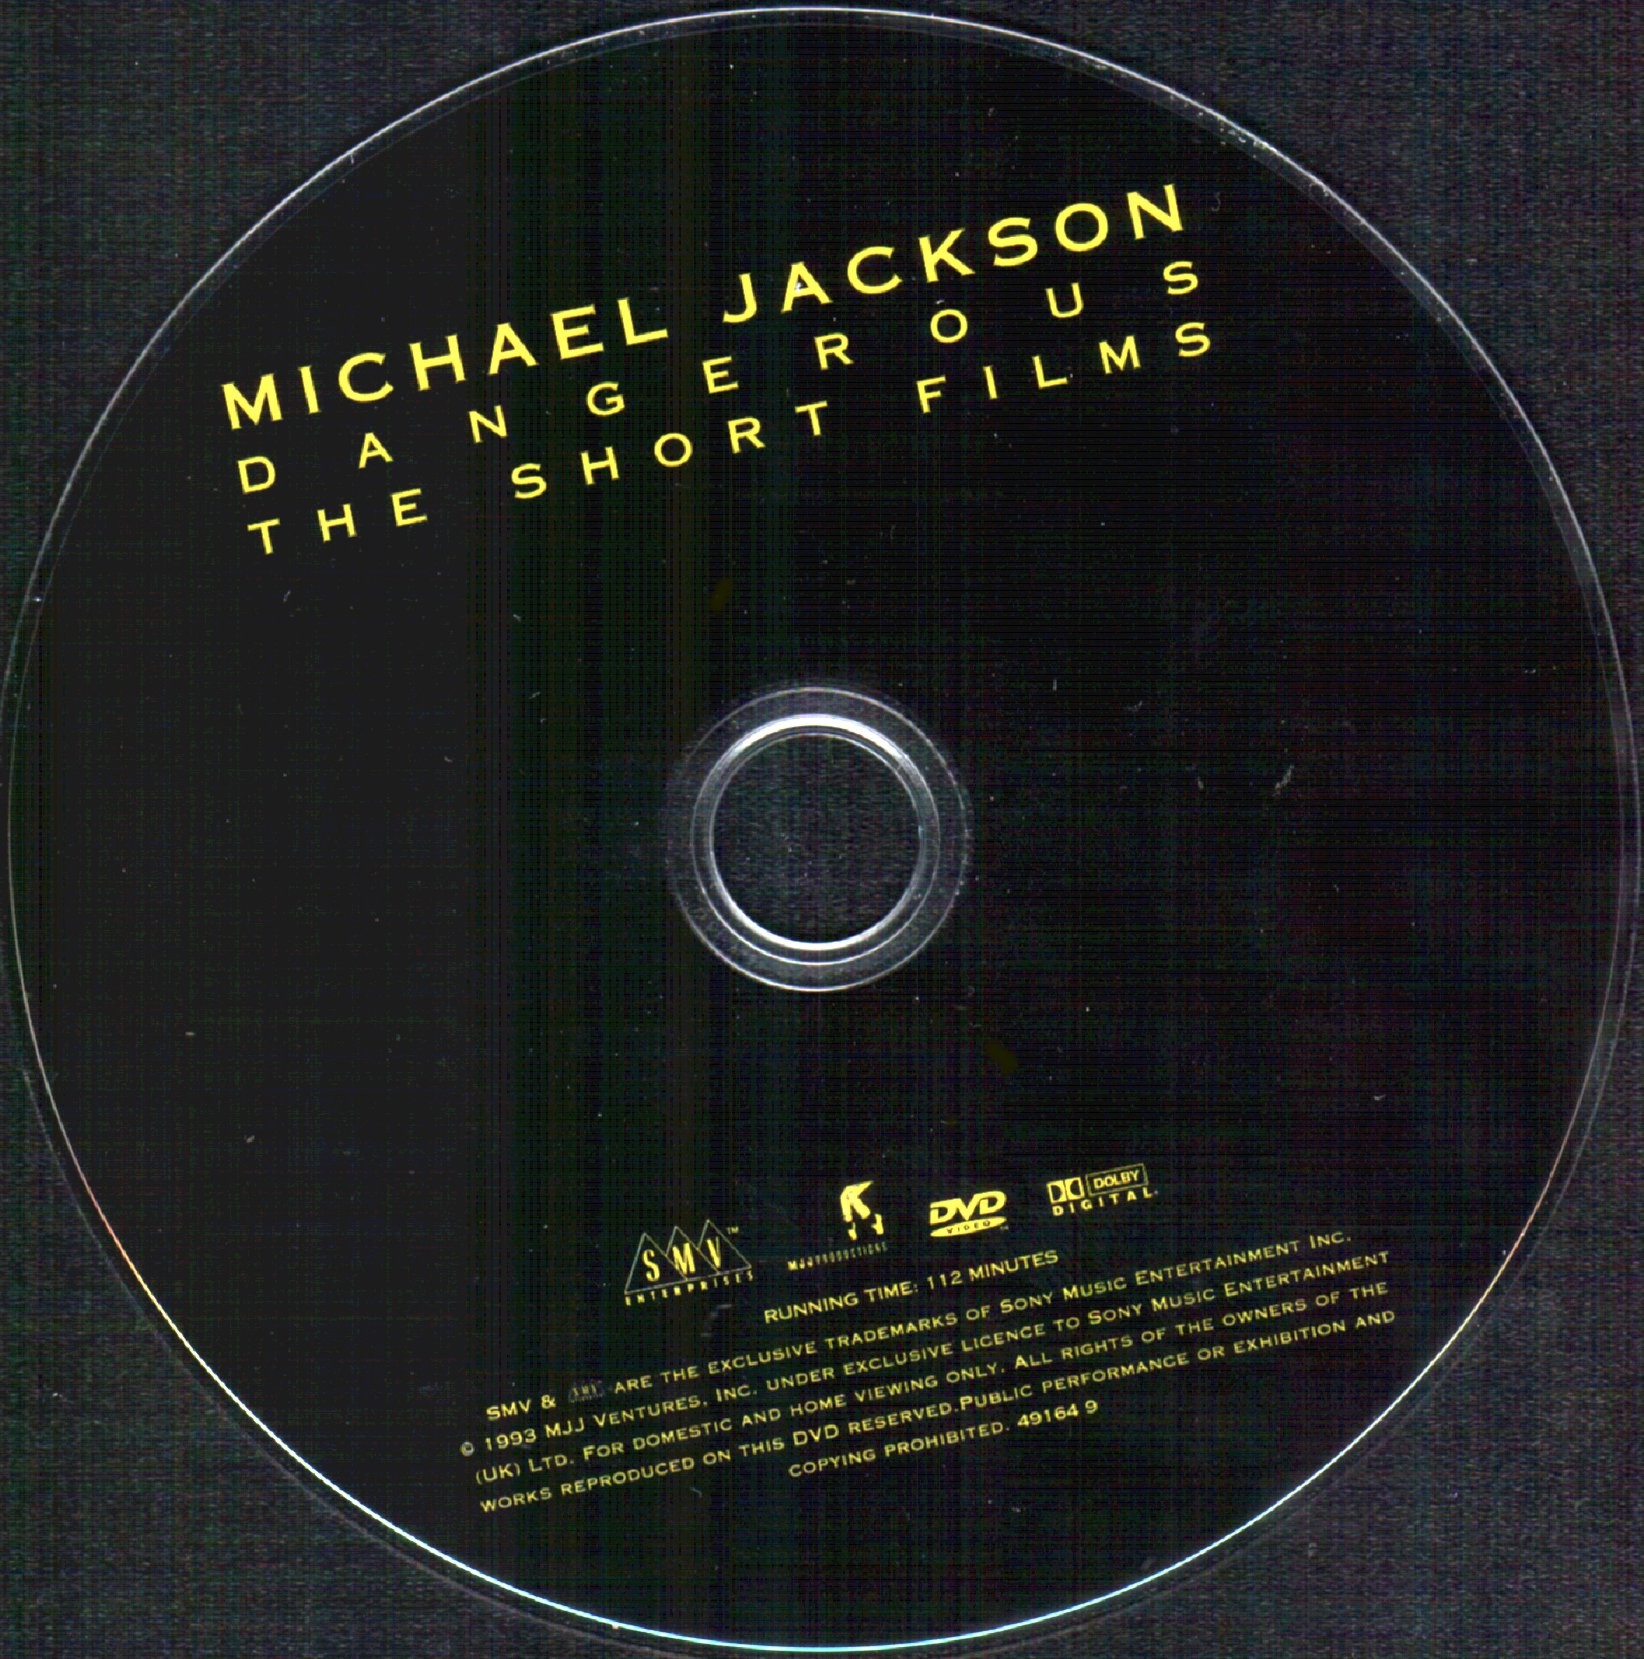 Michael Jackson Dangerous The short film